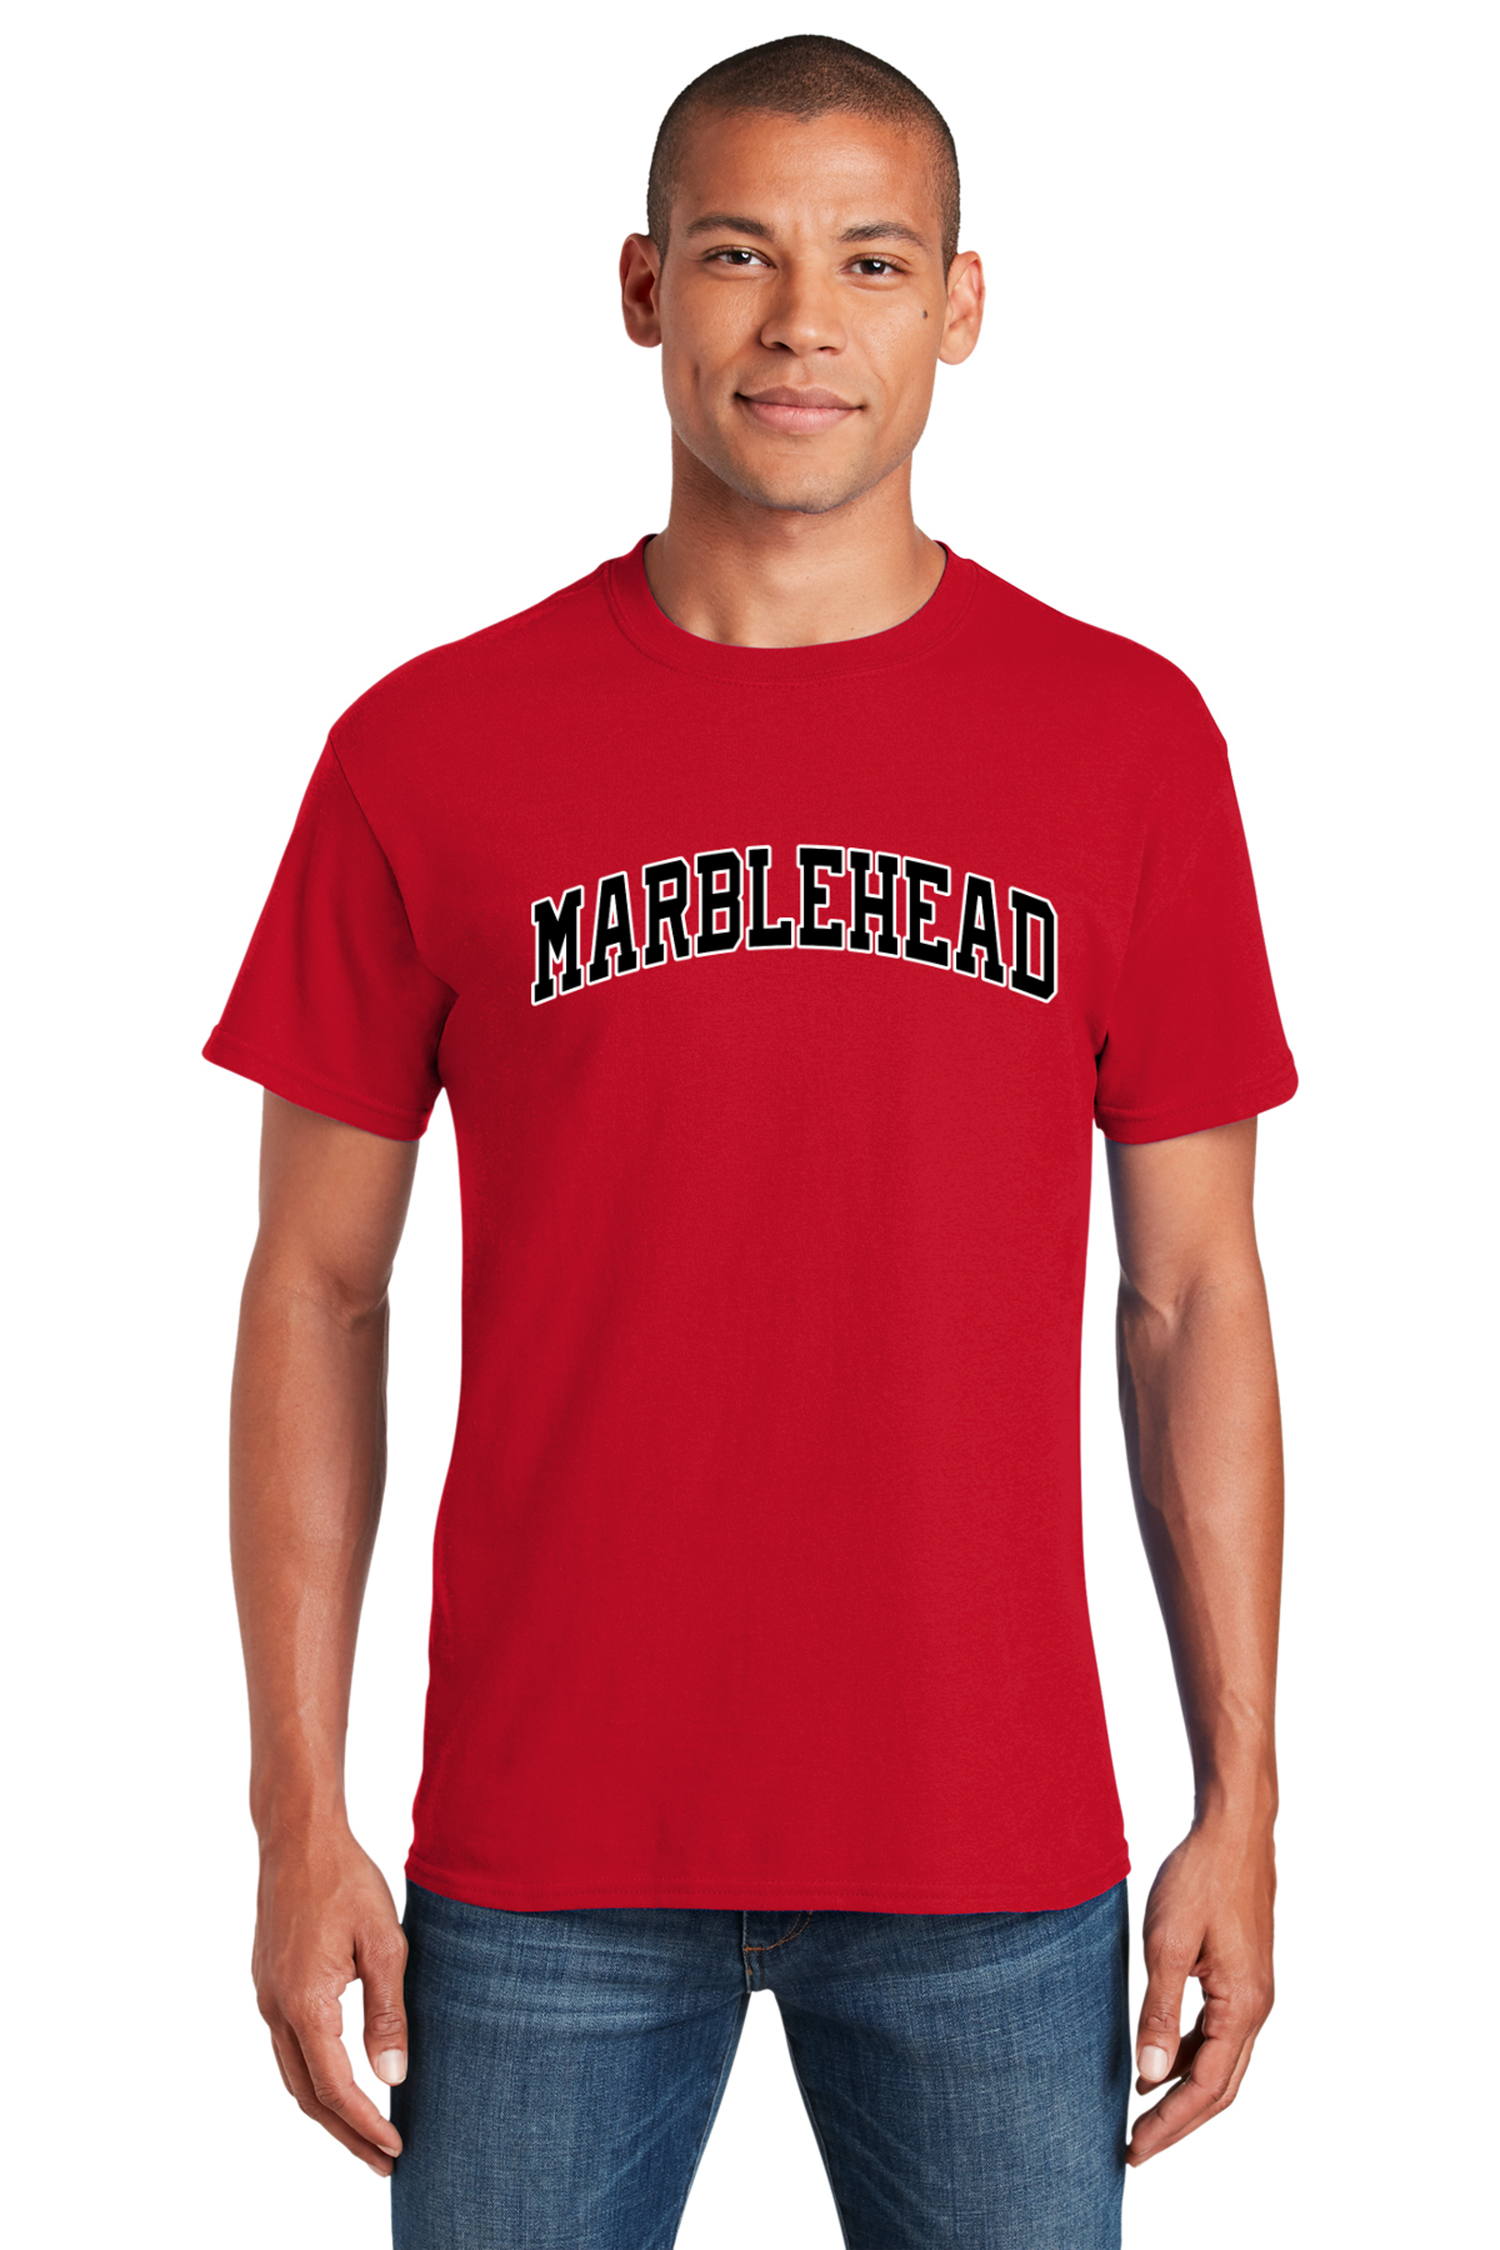 Marblehead Coastal Heavyweight Tee